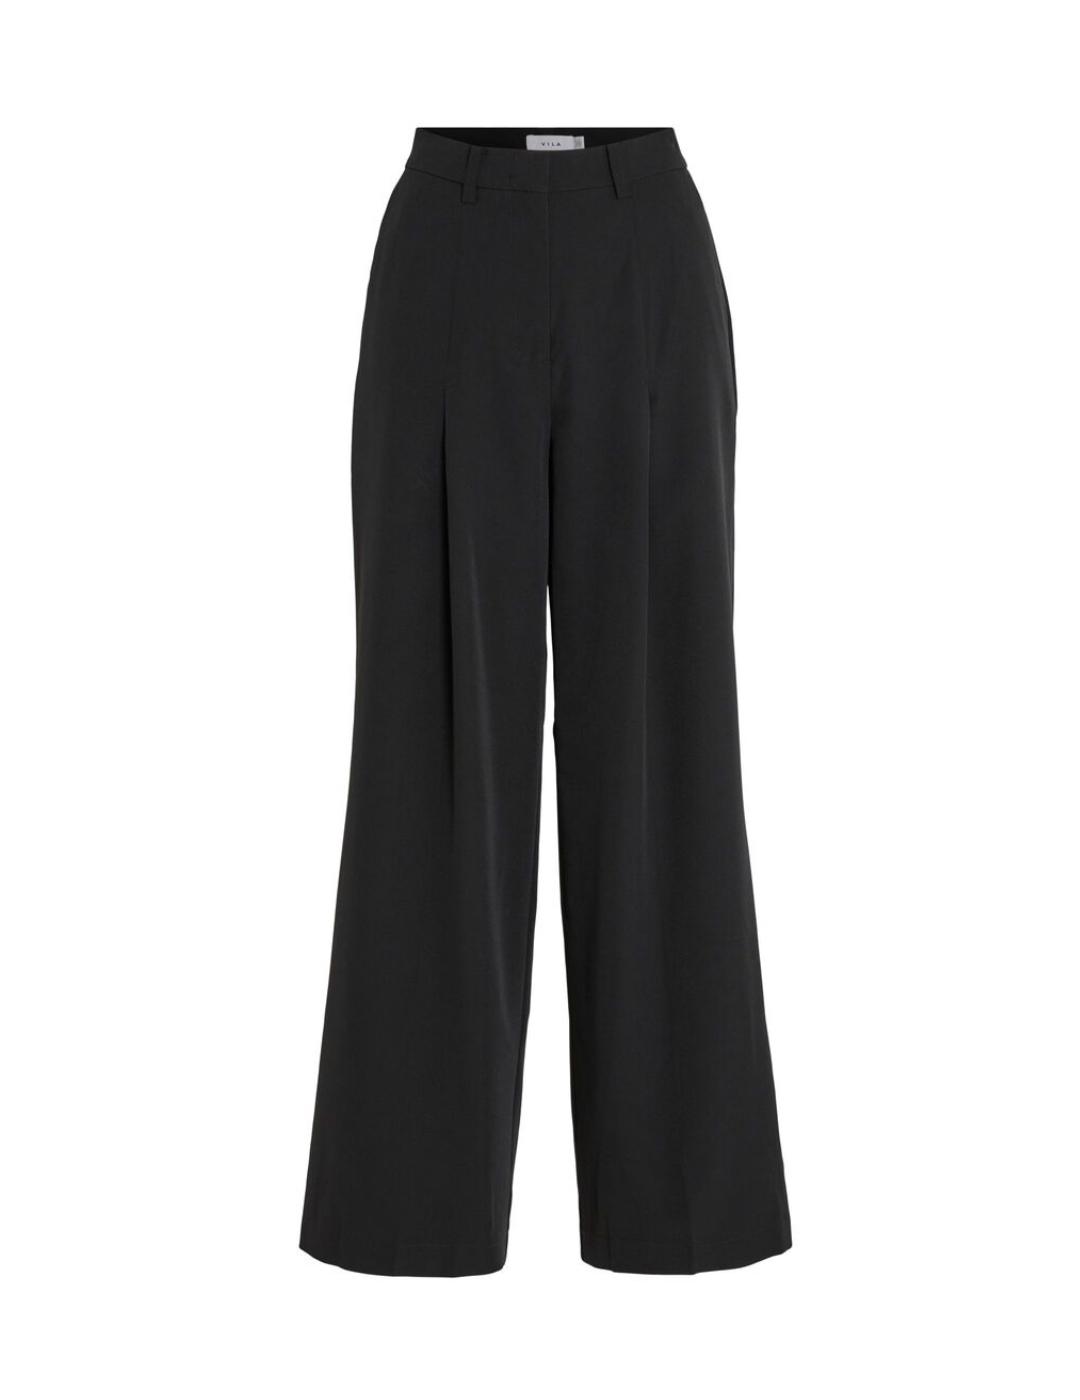 Pantalón Vila Simsa negro de traje pernera ancha para mujer